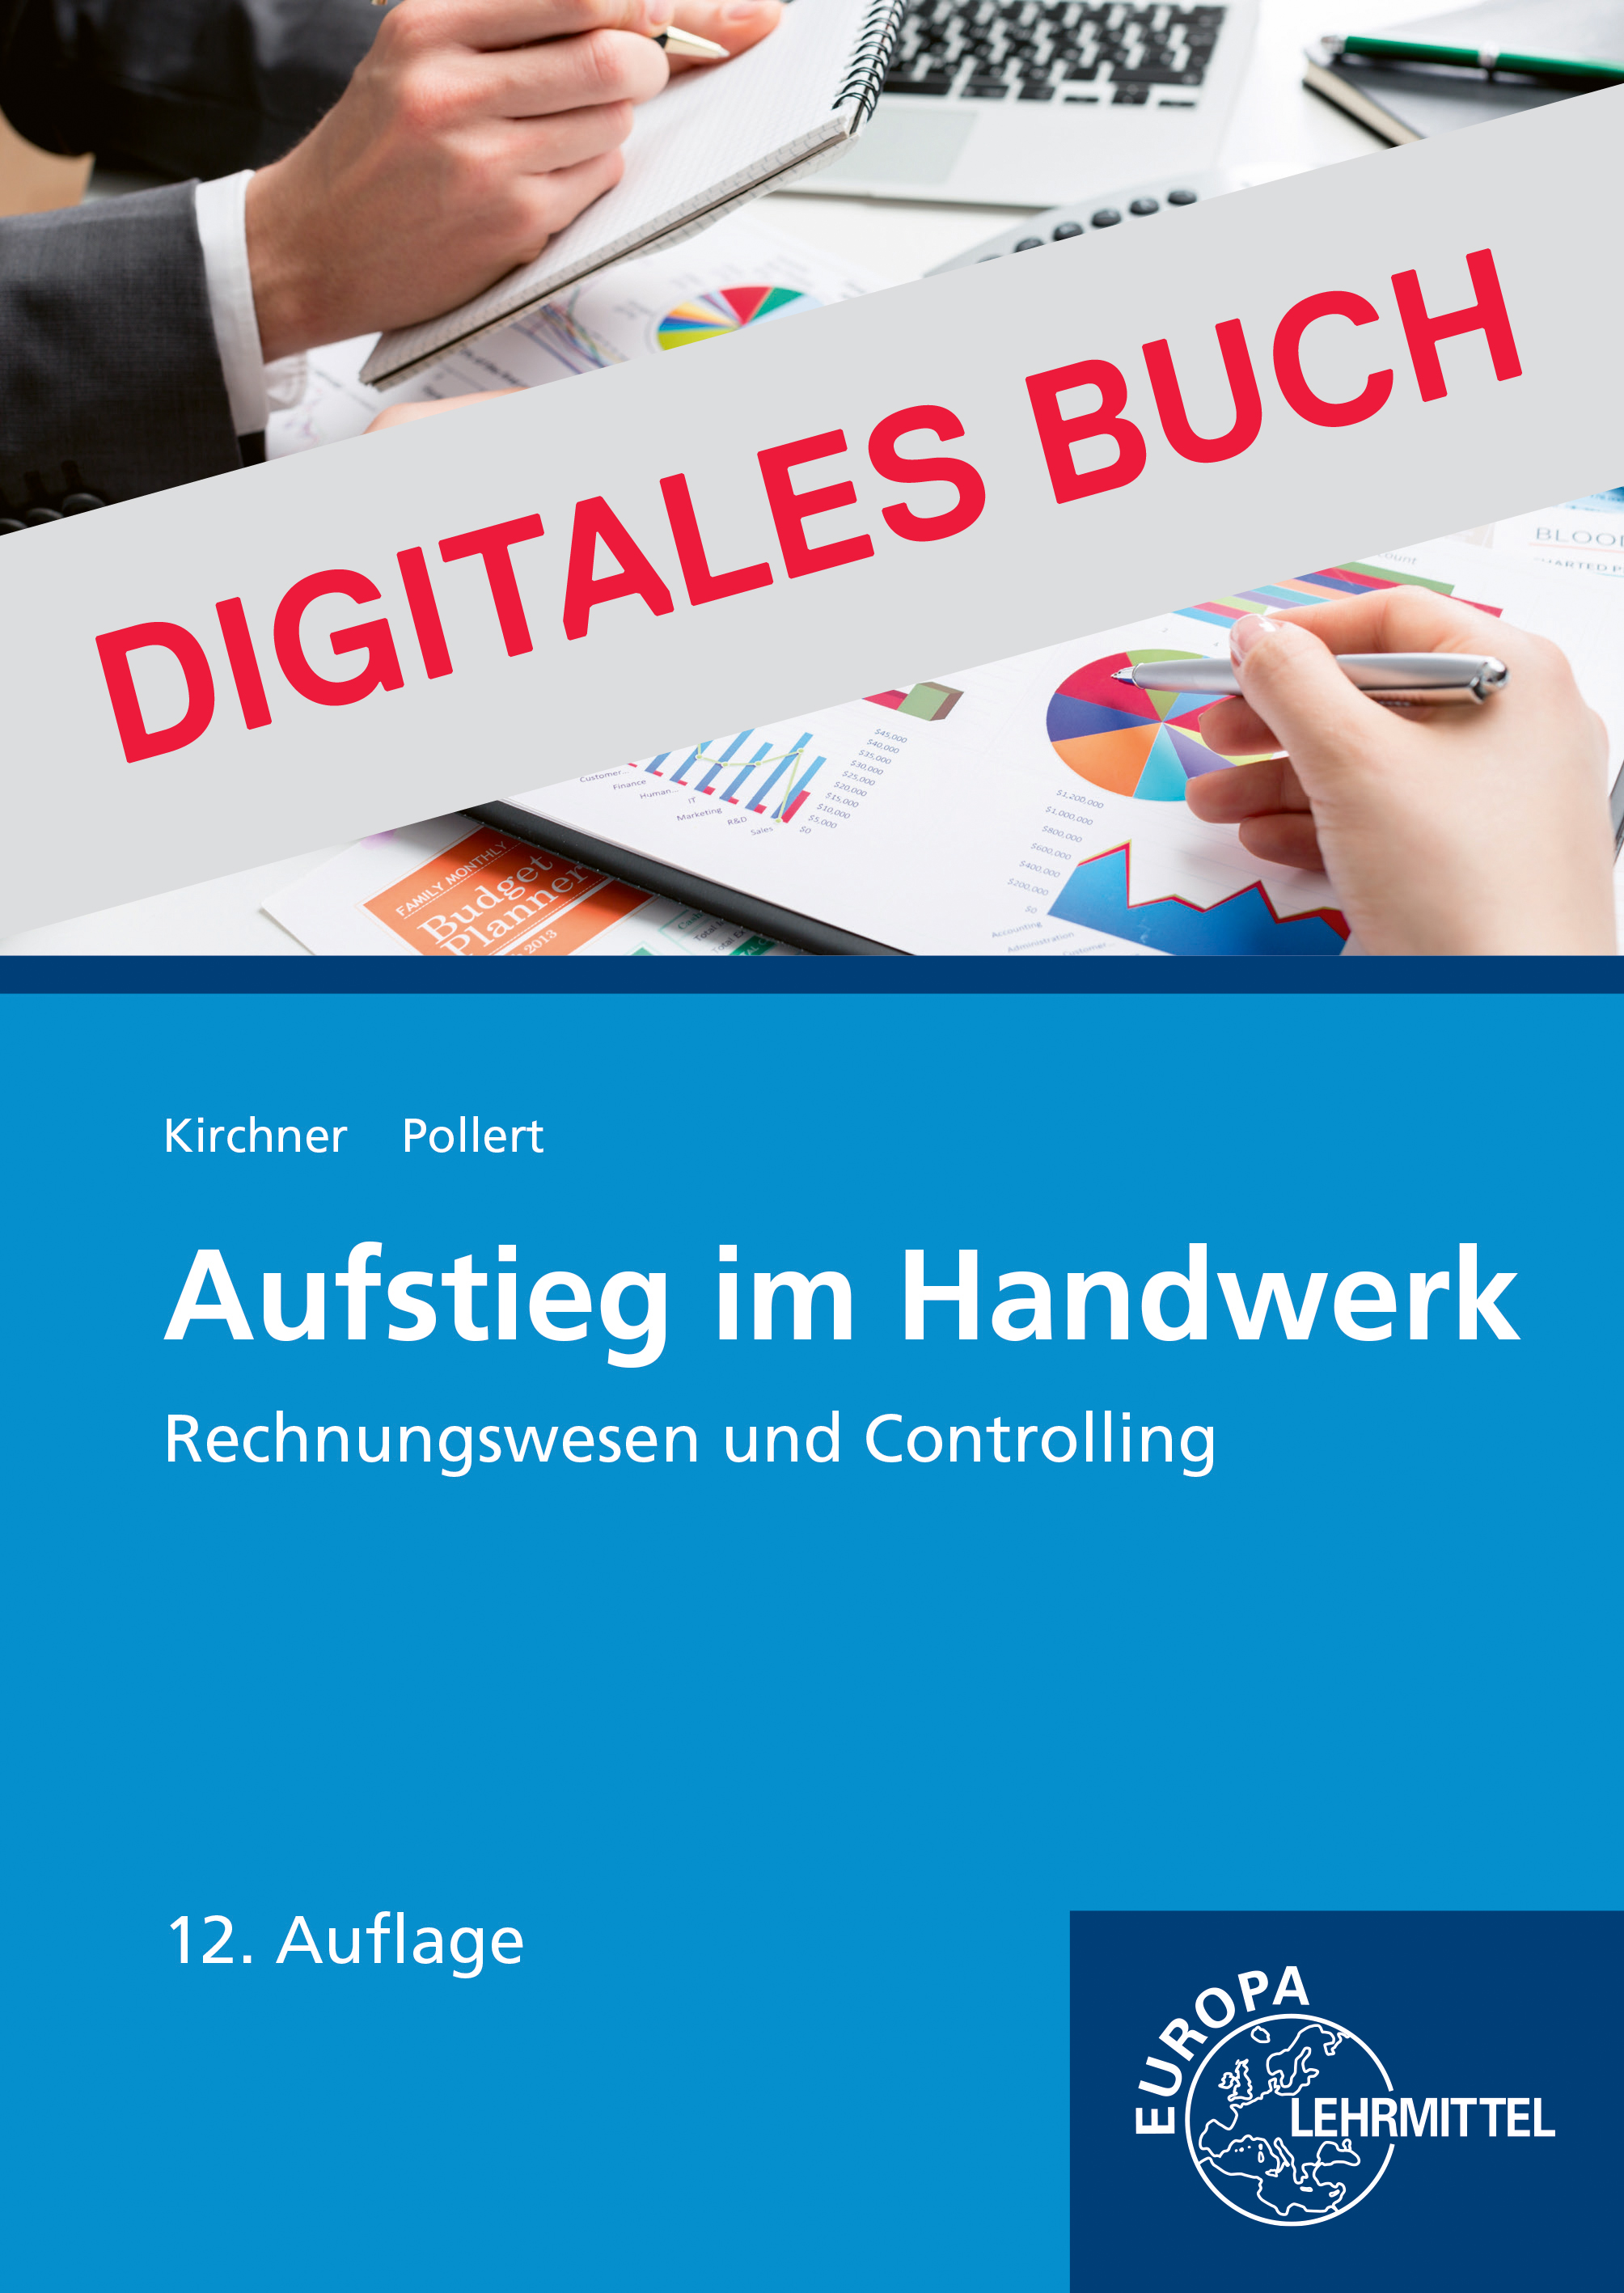 Aufstieg im Handwerk Rechnungswesen und Controlling - Digitales Buch